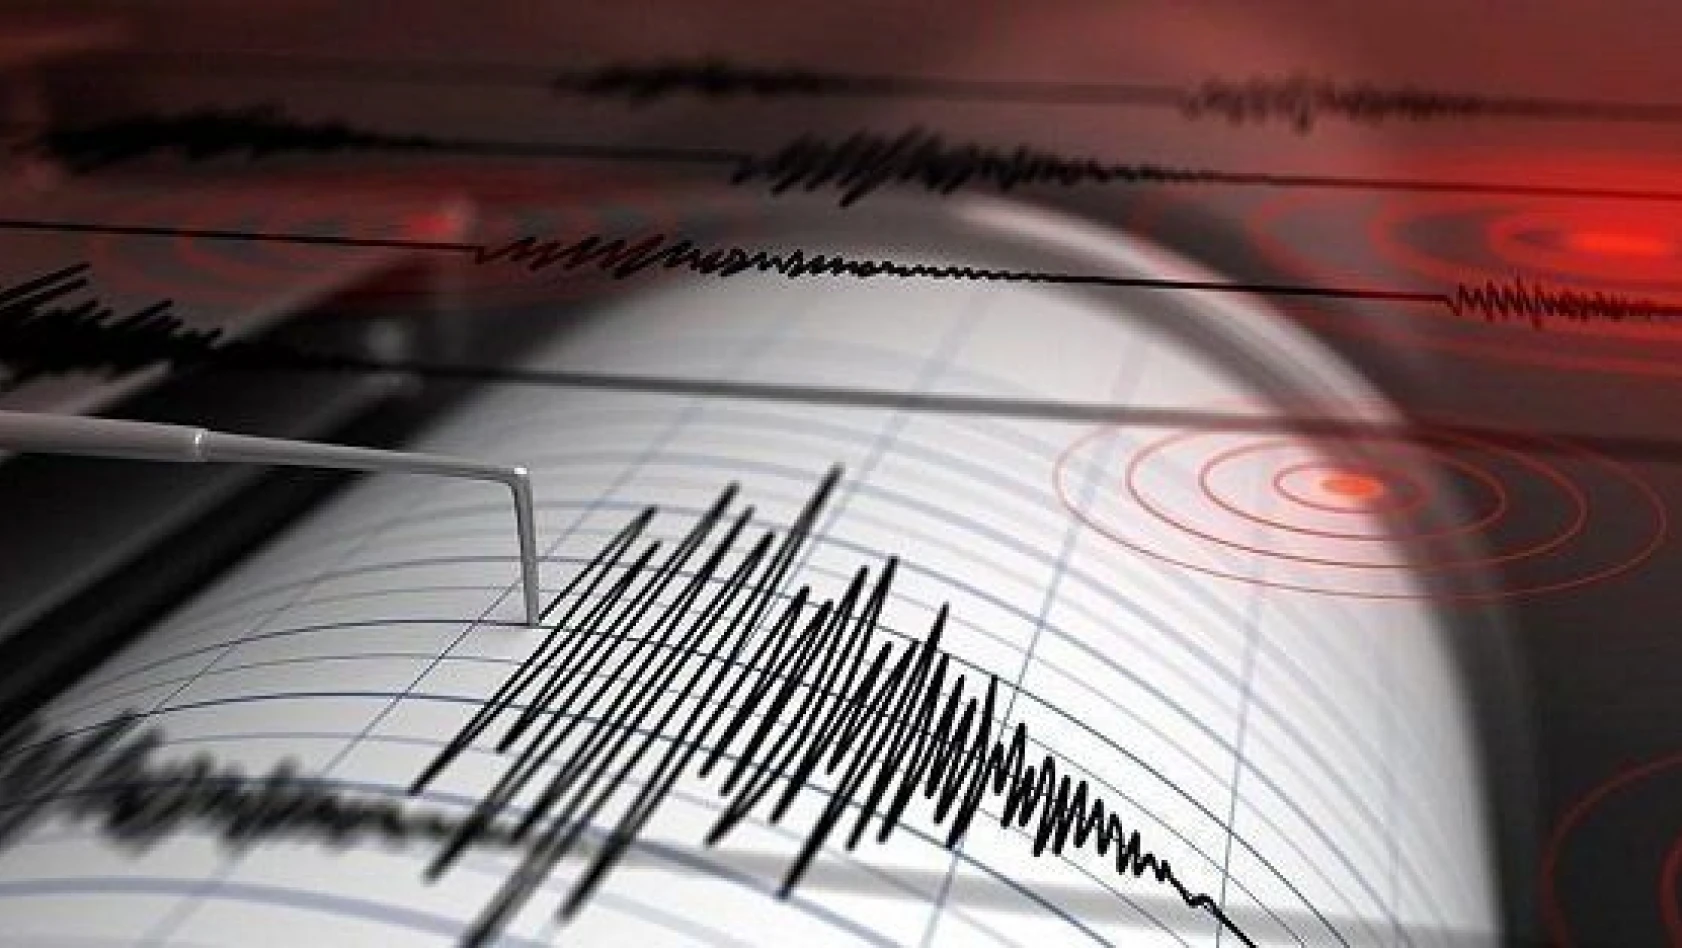 Bingöl Karlıova'da 5.7 büyüklüğünde deprem meydana geldi